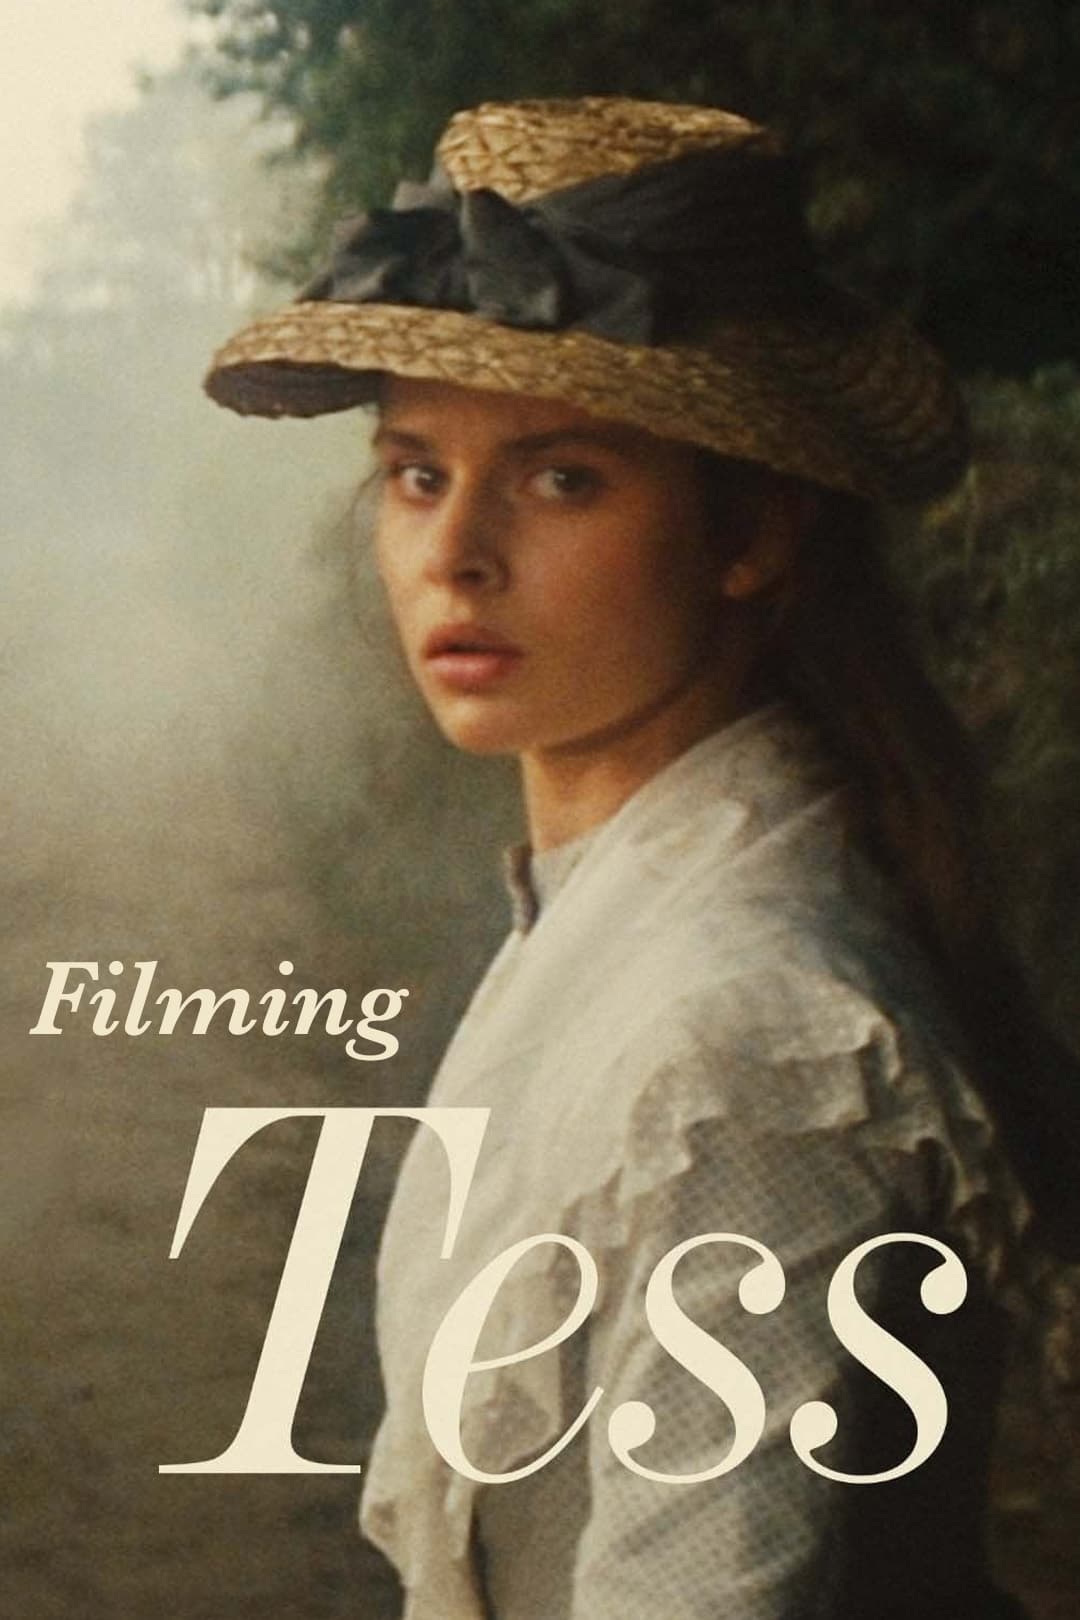 Filming Tess (2004)